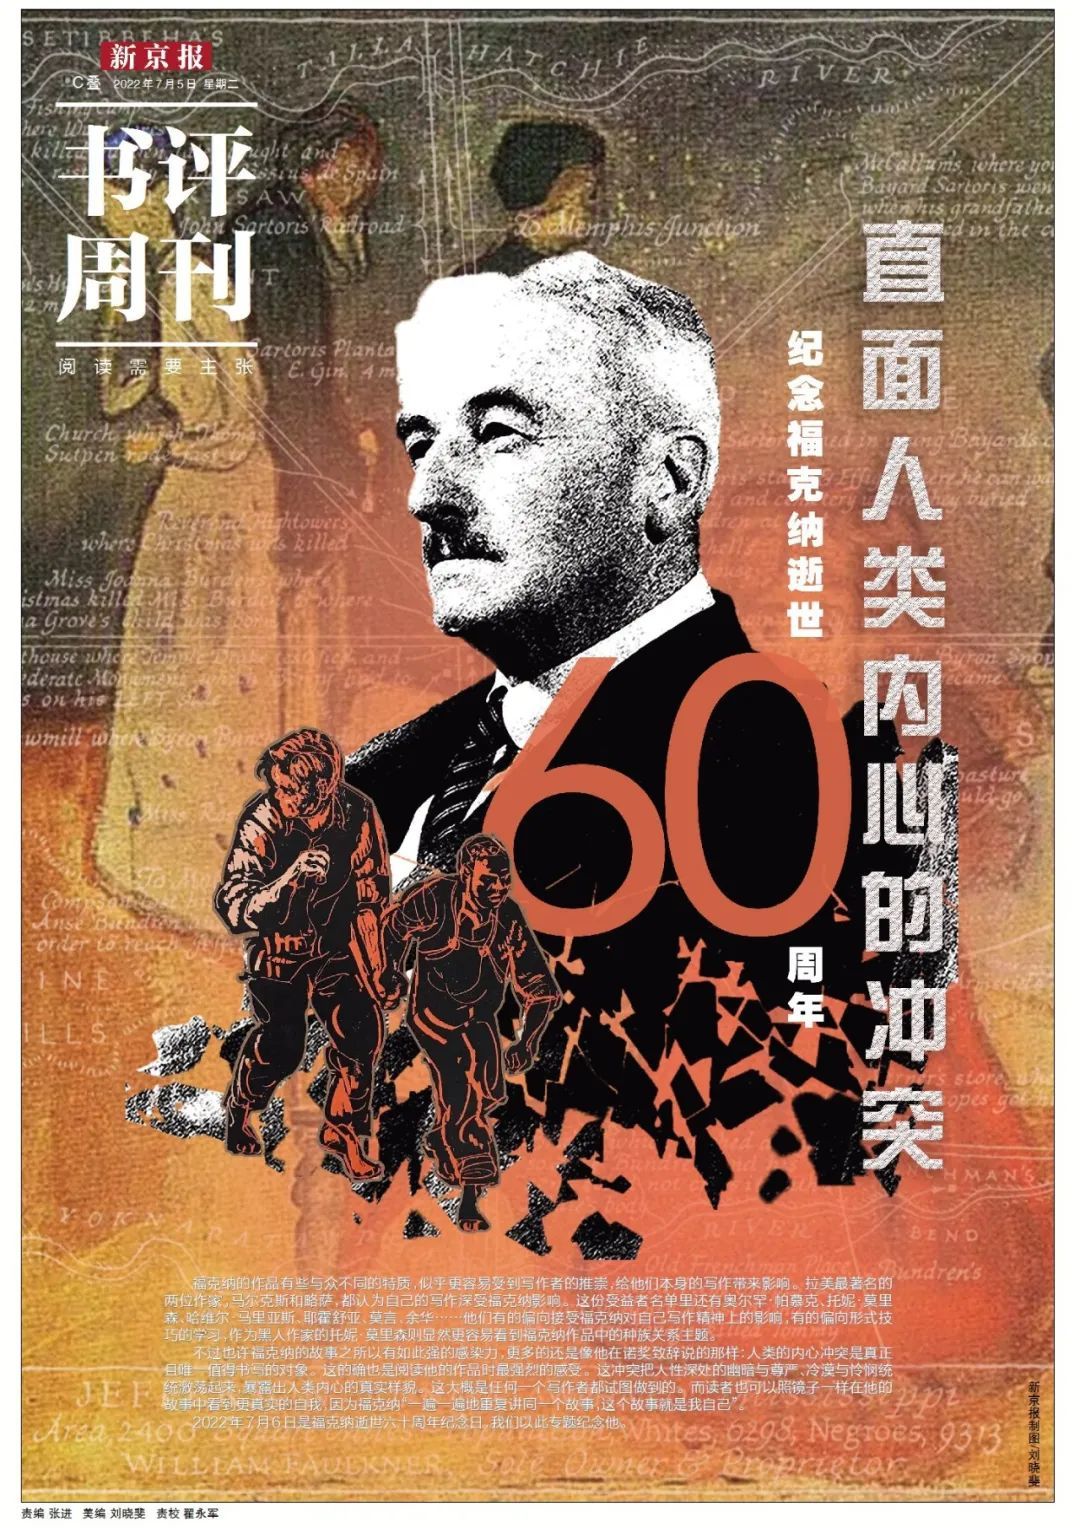 本文出自《新京报·书评周刊》7月5日专题《直面人类内心的冲突：纪念福克纳逝世60周年》的C04-C05版。